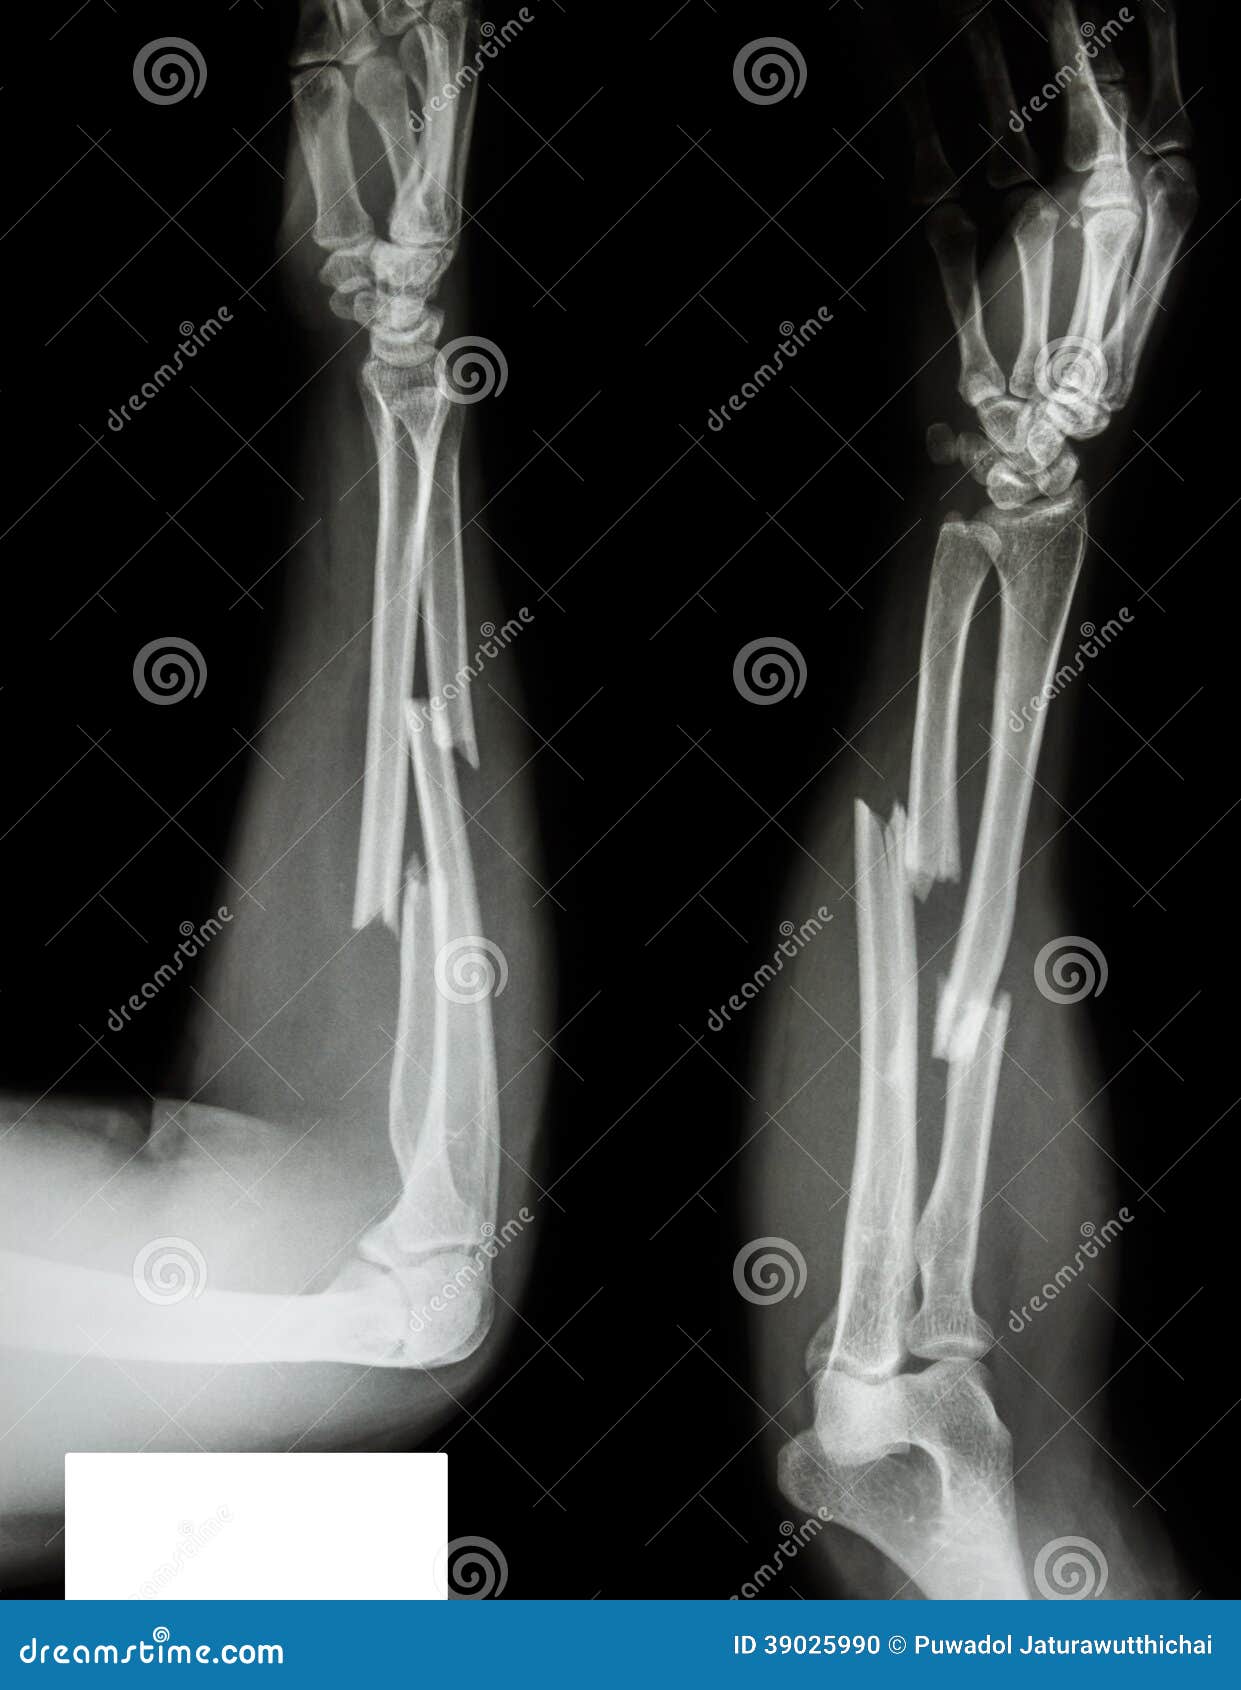 fracture radius & ulnar bone